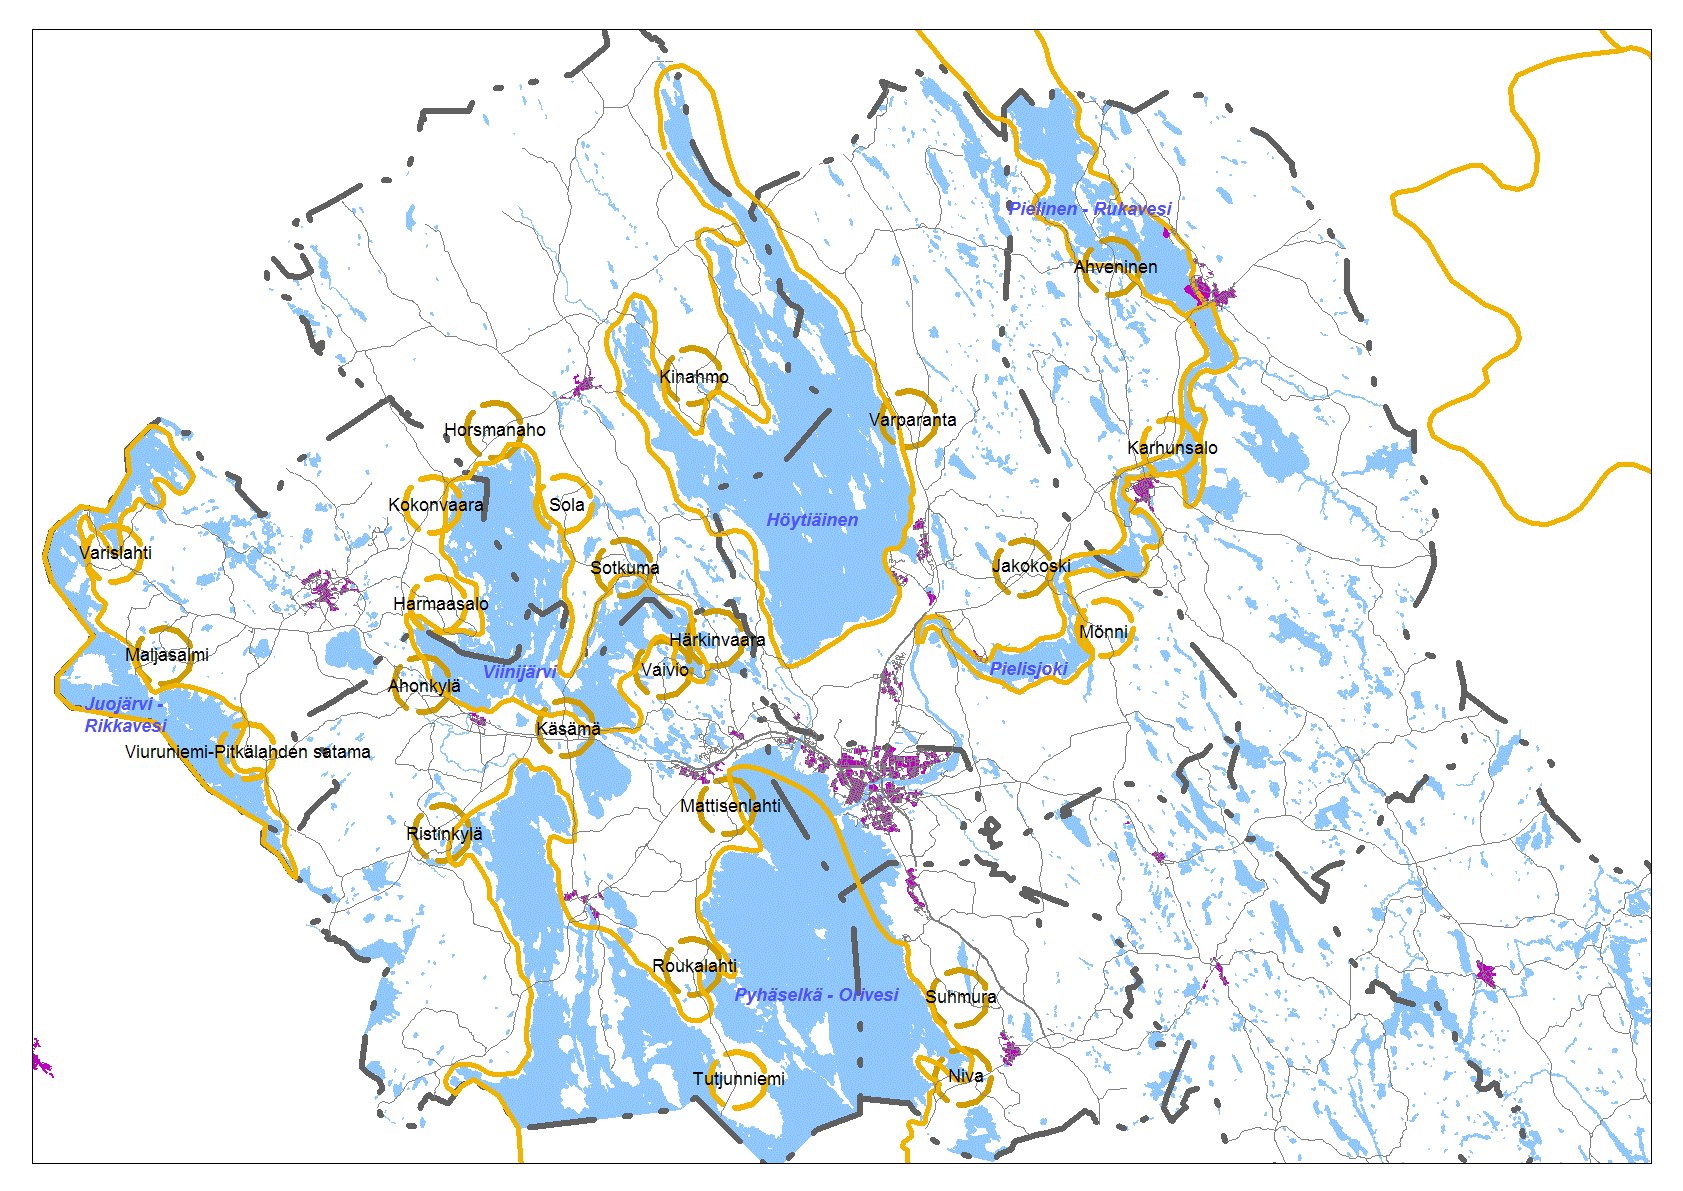 51 Suurvesistöt ja rantojenkäytön solmupisteet Pohjois-Karjalan maakuntakaavassa rantojenkäytön suunnittelu perustuu toiminnallisesti ja rantojen maankäytön kannalta tärkeimpien